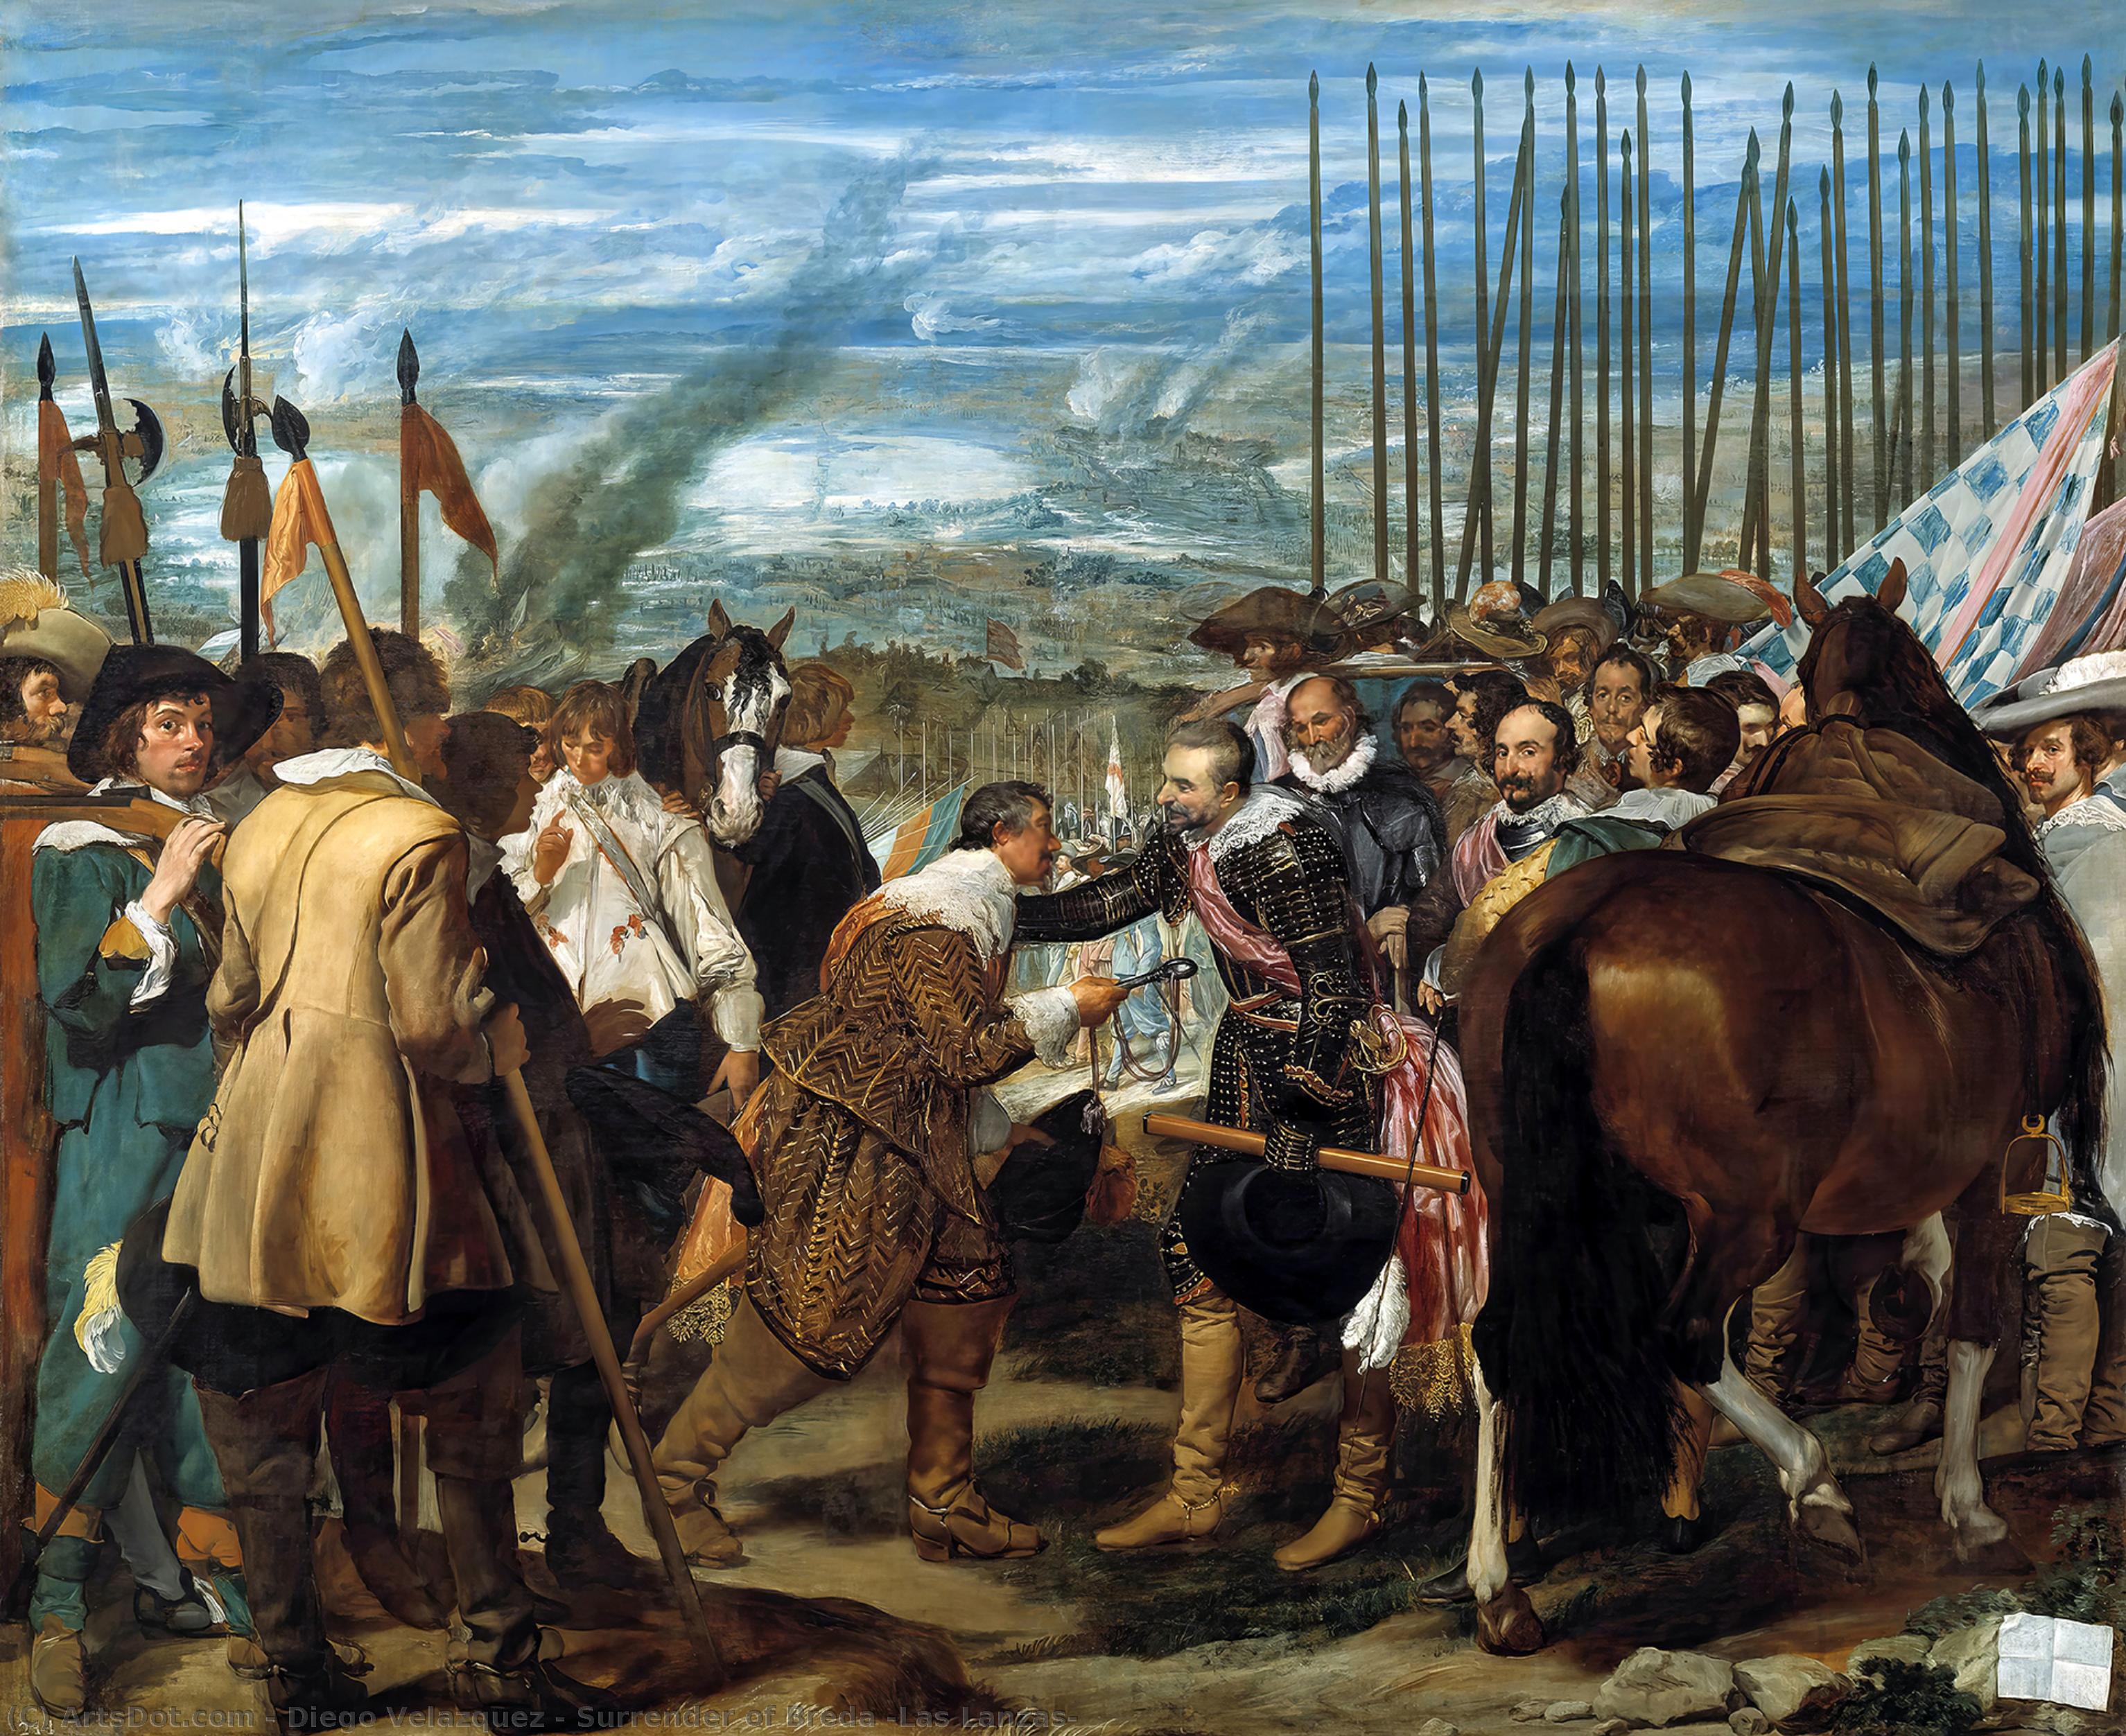 WikiOO.org - Encyclopedia of Fine Arts - Malba, Artwork Diego Velazquez - Surrender of Breda (Las Lanzas)